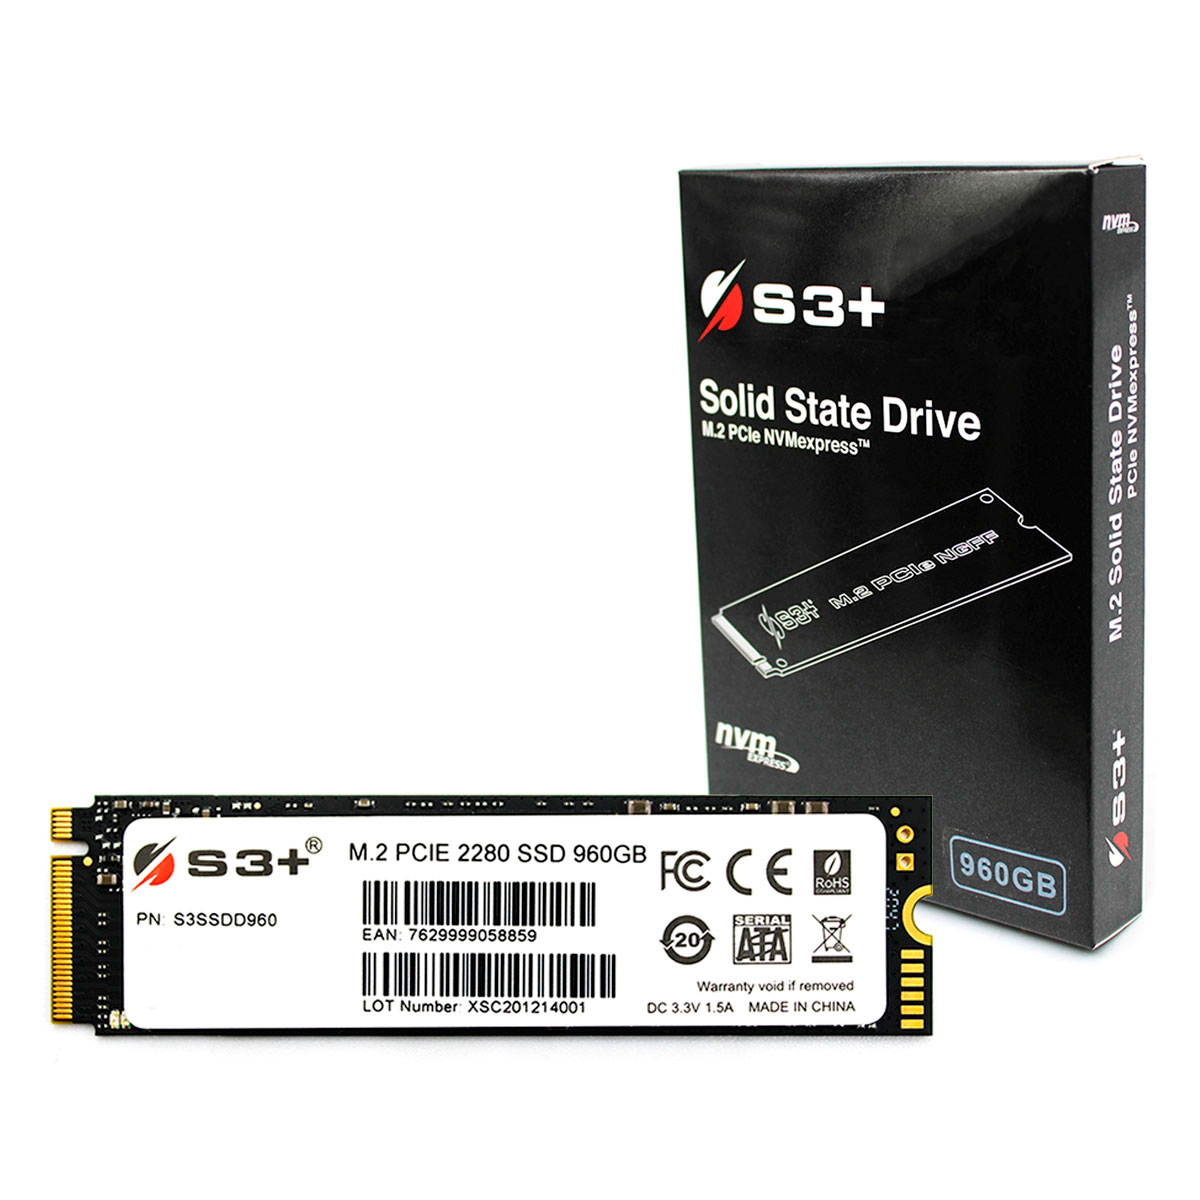 SSD 960GB S3+, M.2 2280 NVMe 1.3, PCIe Gen 3x4, Leitura 2000 MB/s, Gravação 1600 MB/s - S3SSDD960